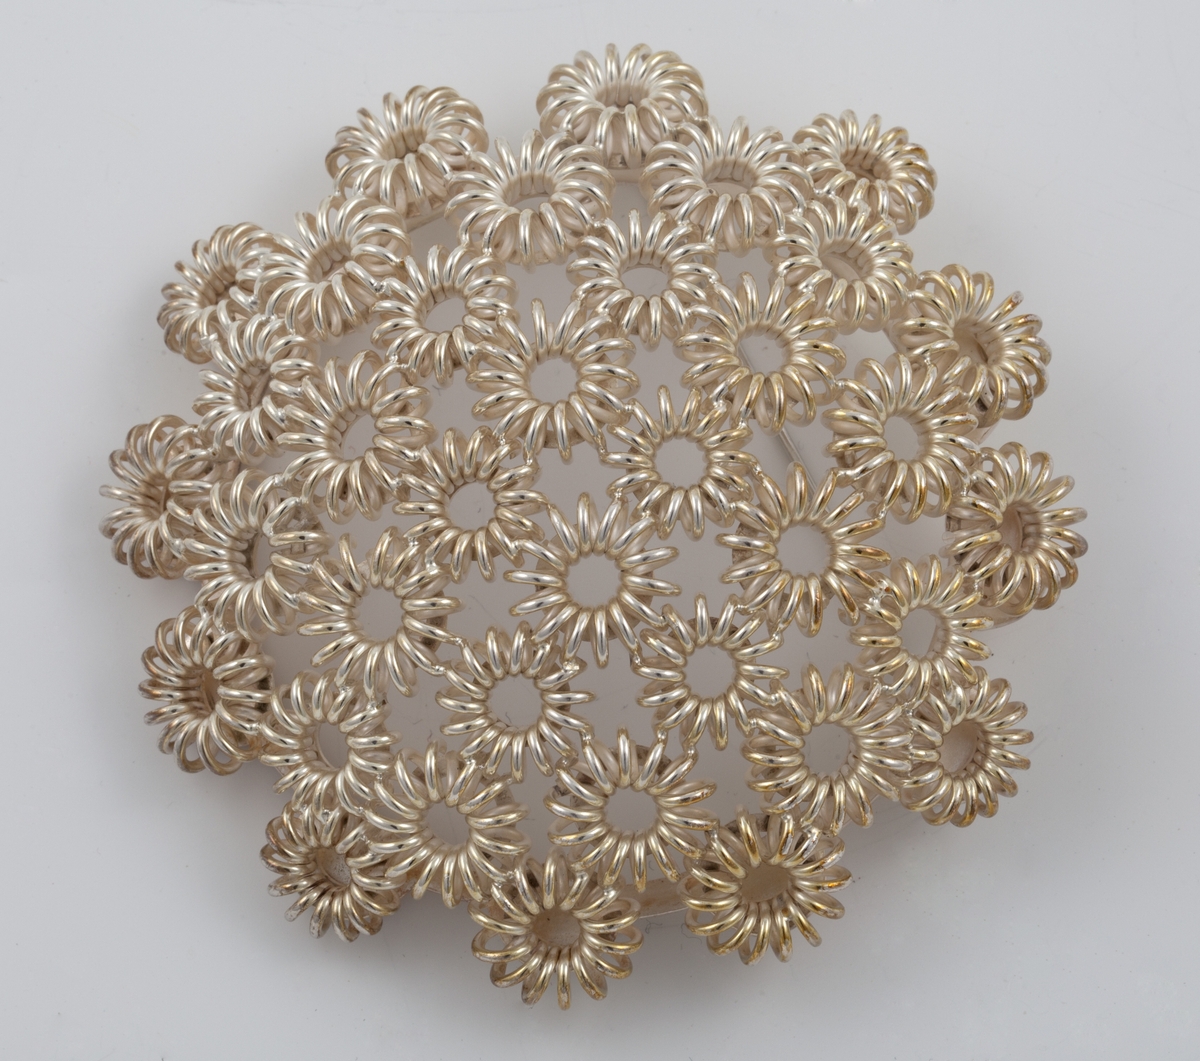 Rund buet brosje i sølvfiligran, bestående av runde stiliserte blomsterformer.